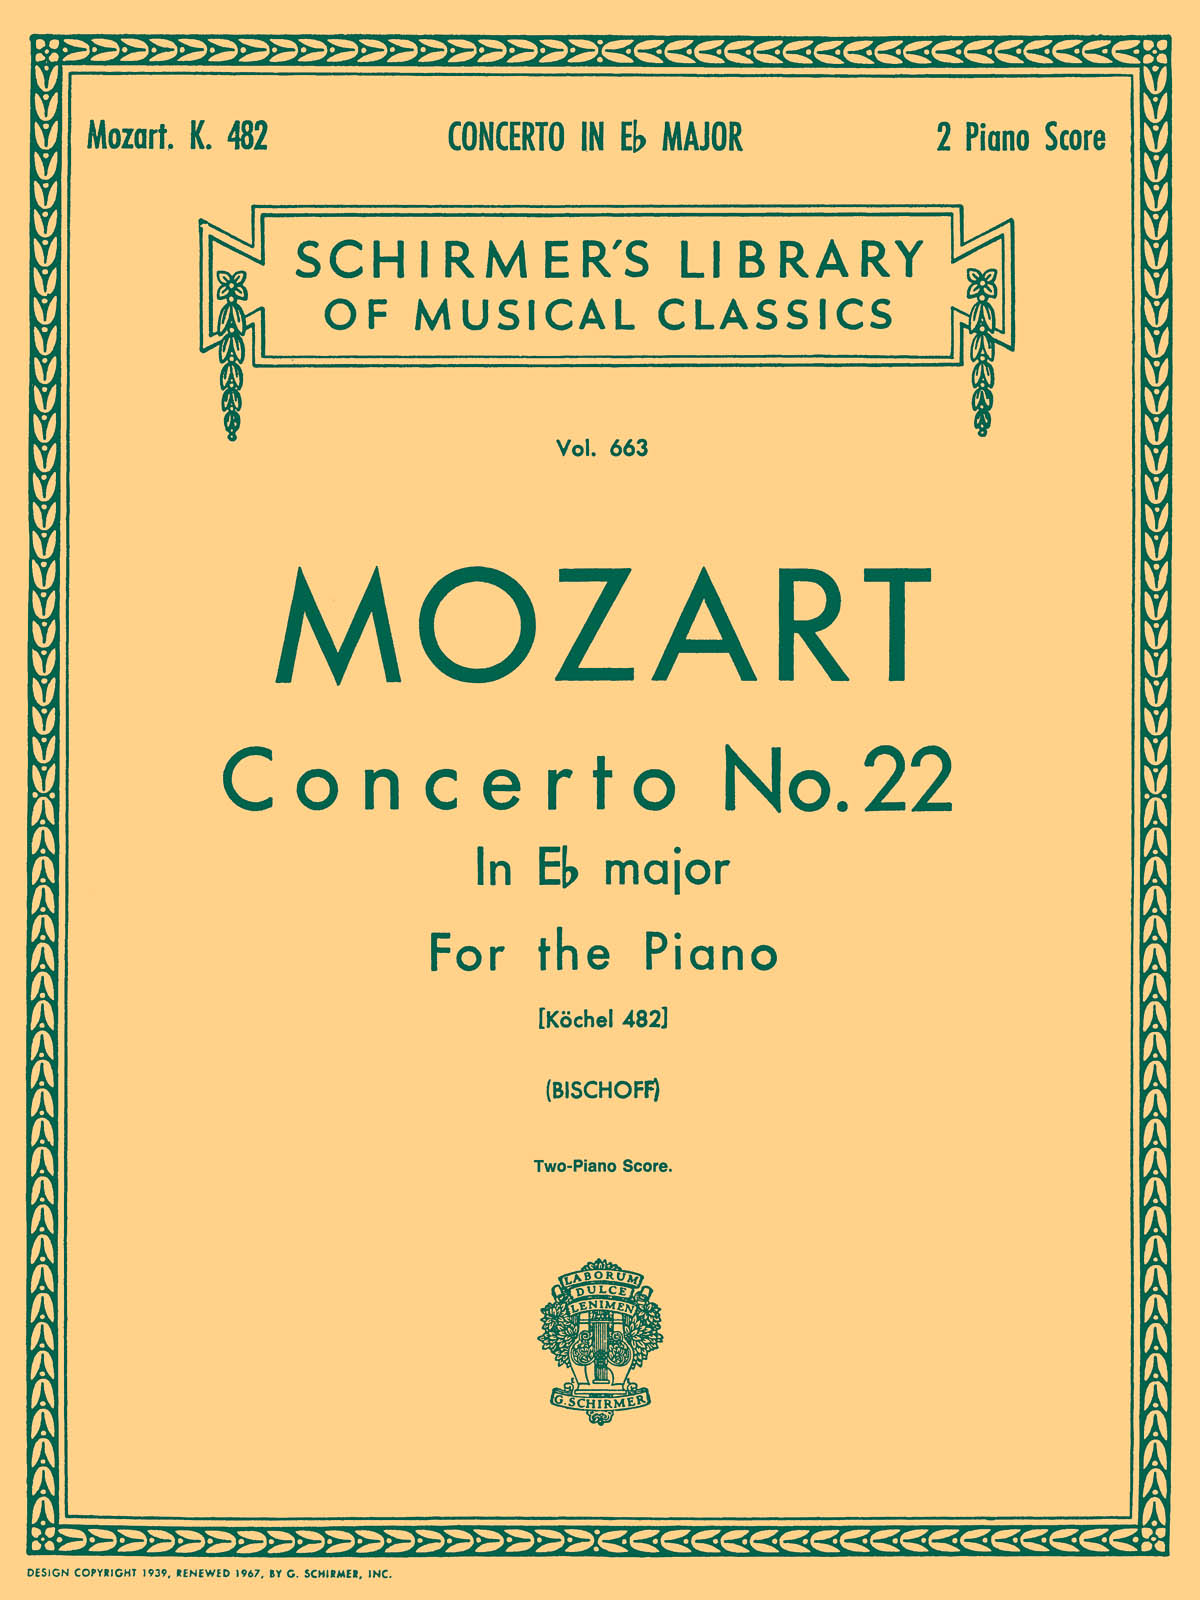 Mozart: Concerto No. 22 in Eb, K.482